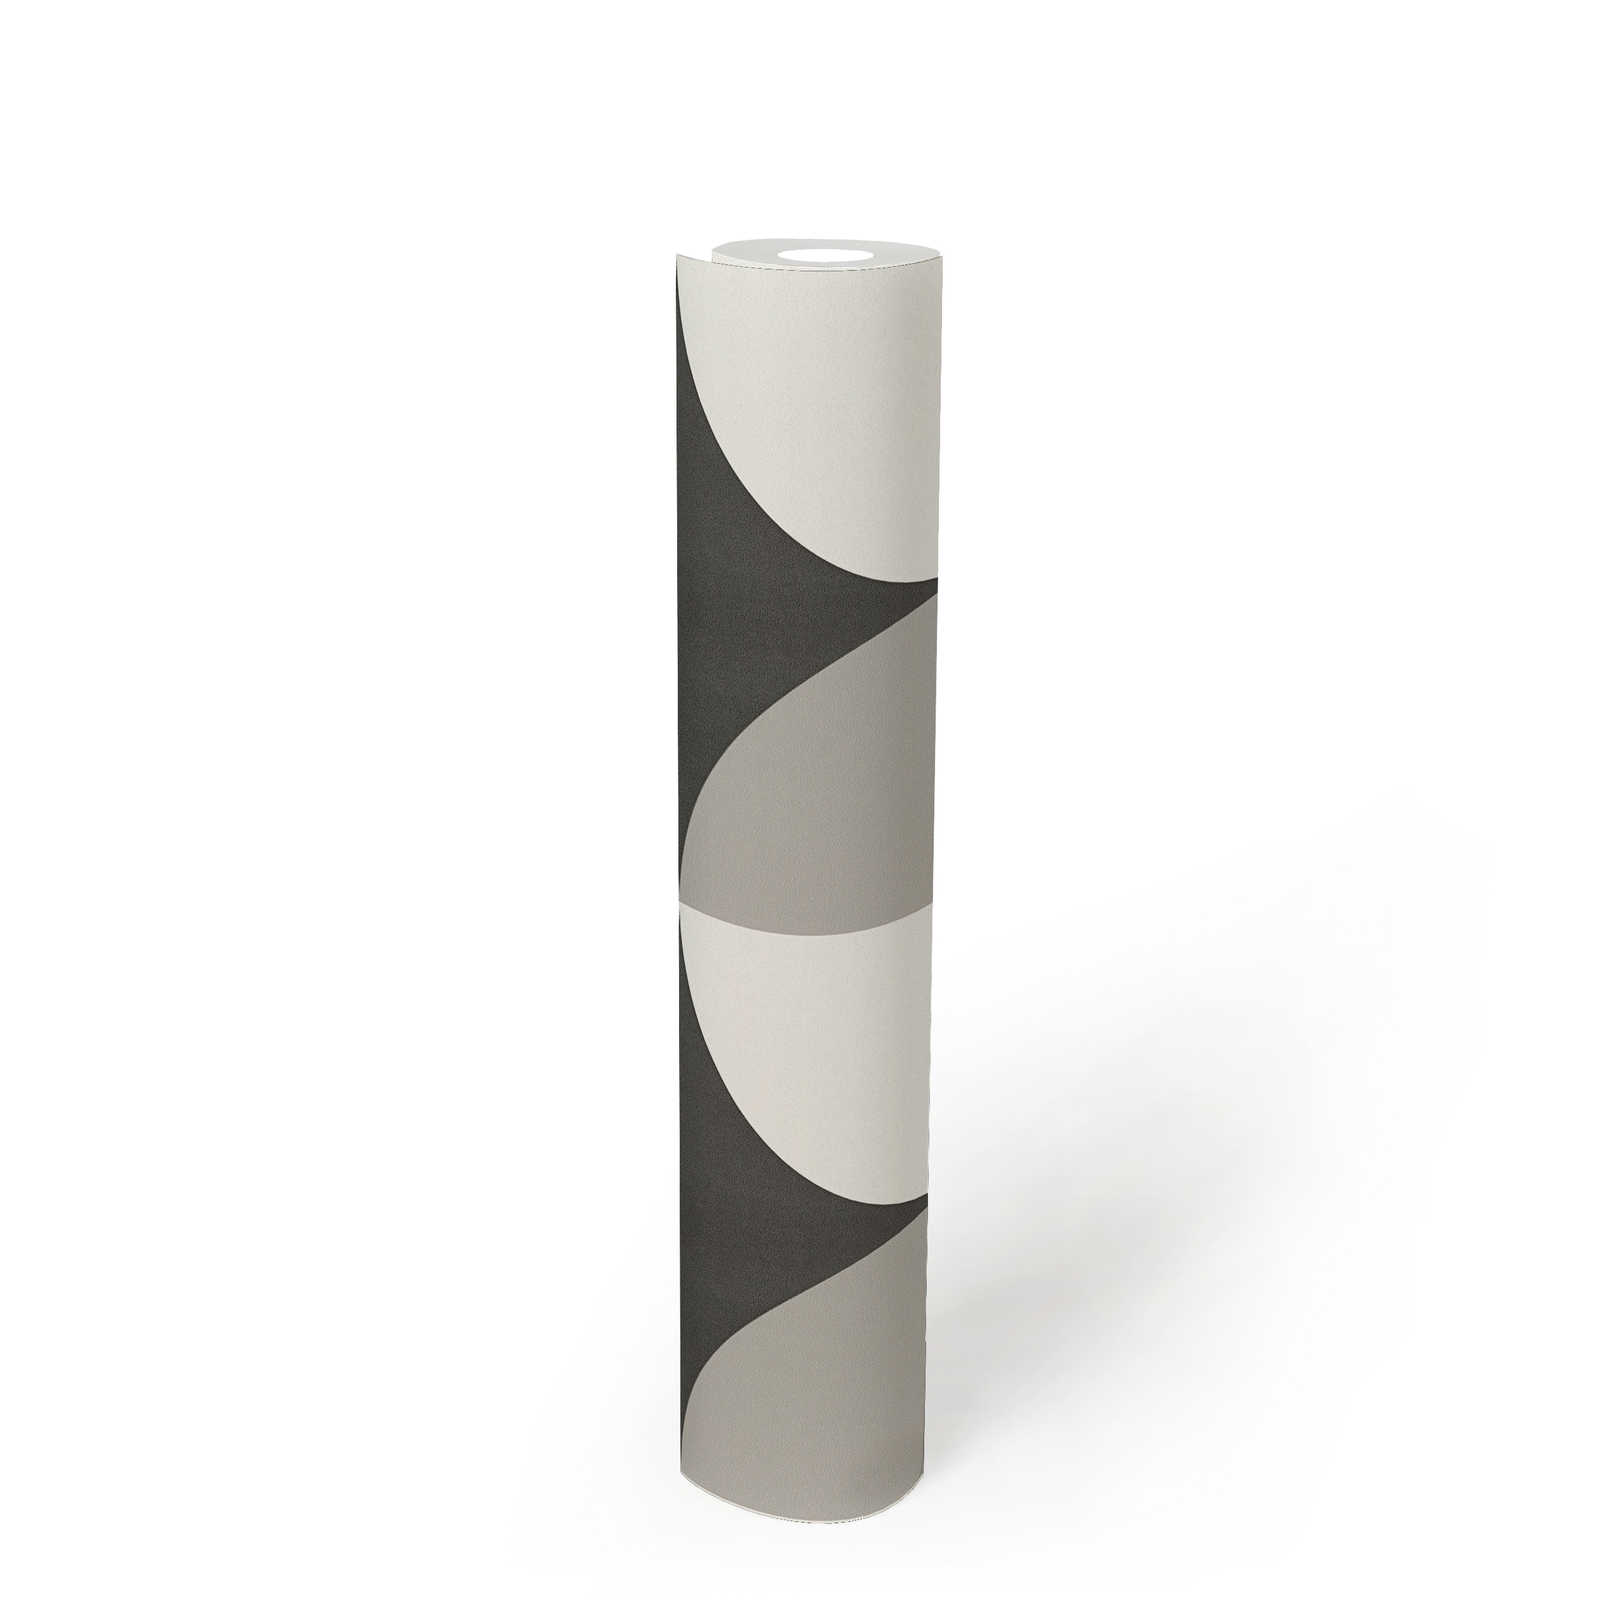             Retro vliesbehang met grafisch cirkelpatroon - zwart, wit, grijs
        